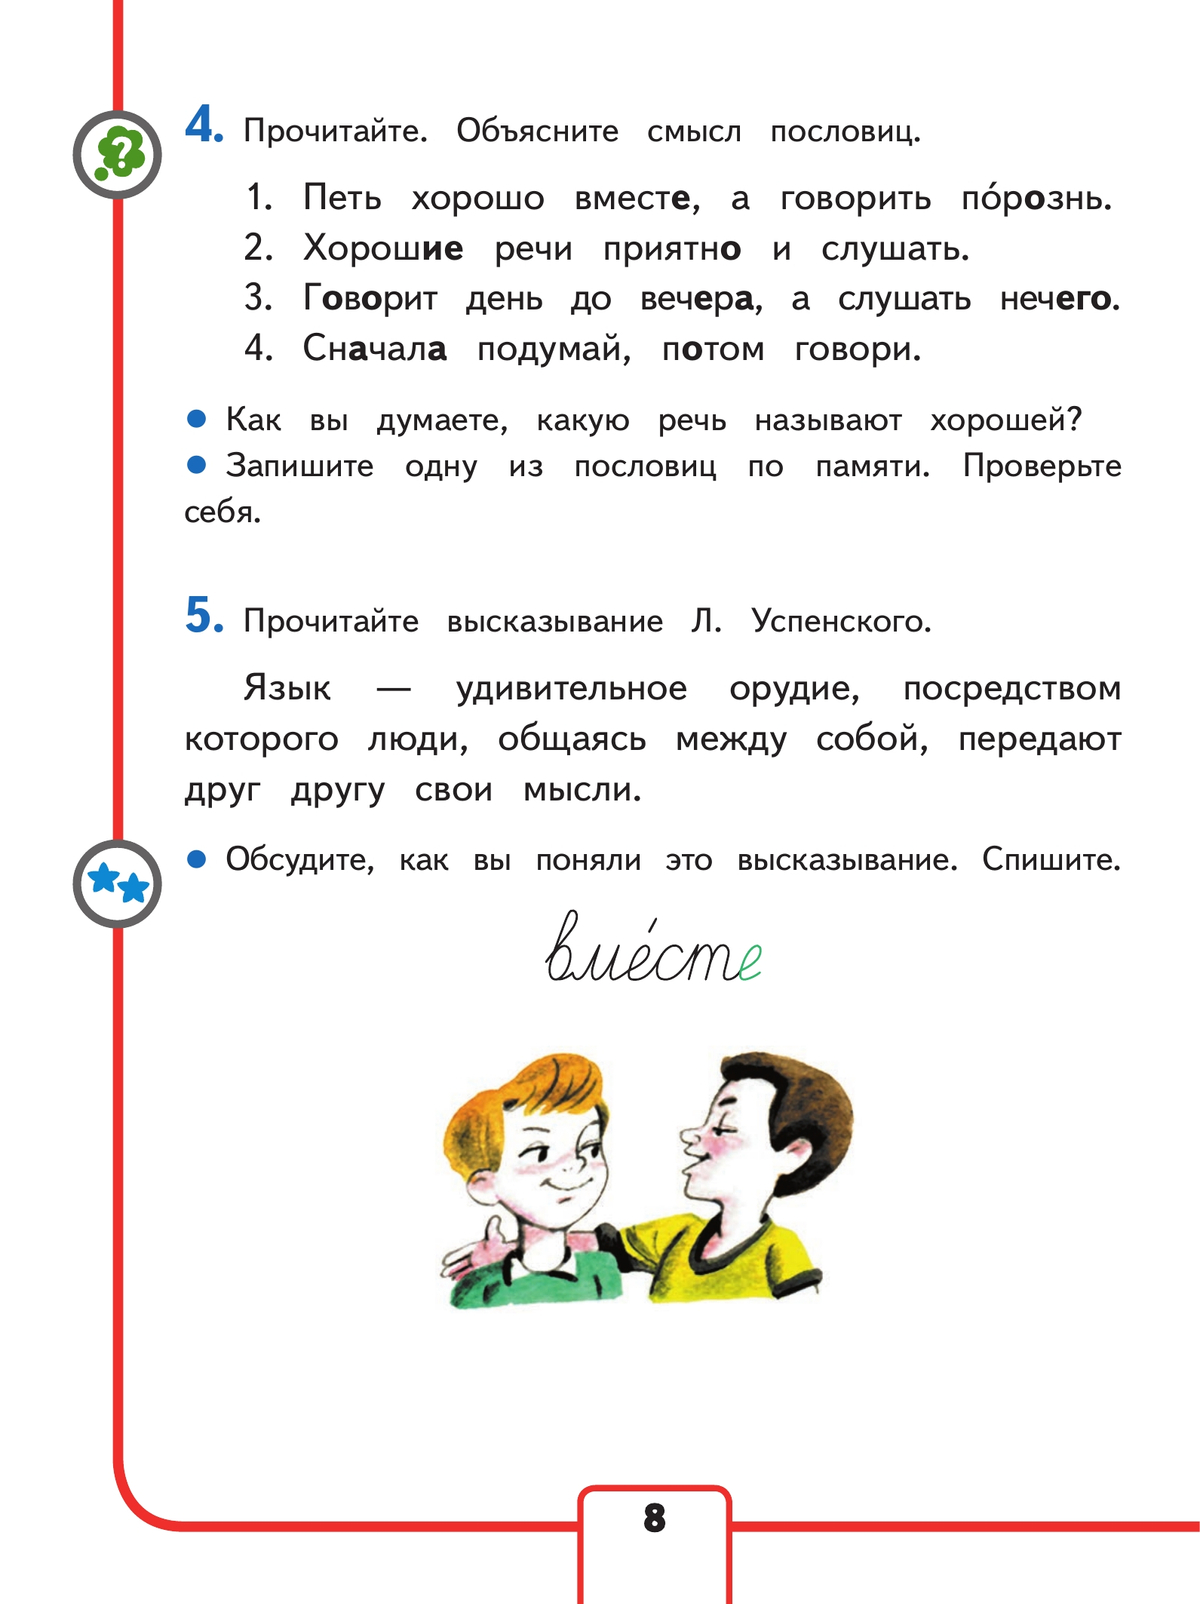 Русский язык. 3 класс. Учебное пособие. В 5 ч. Часть 1 (для слабовидящих обучающихся) 3